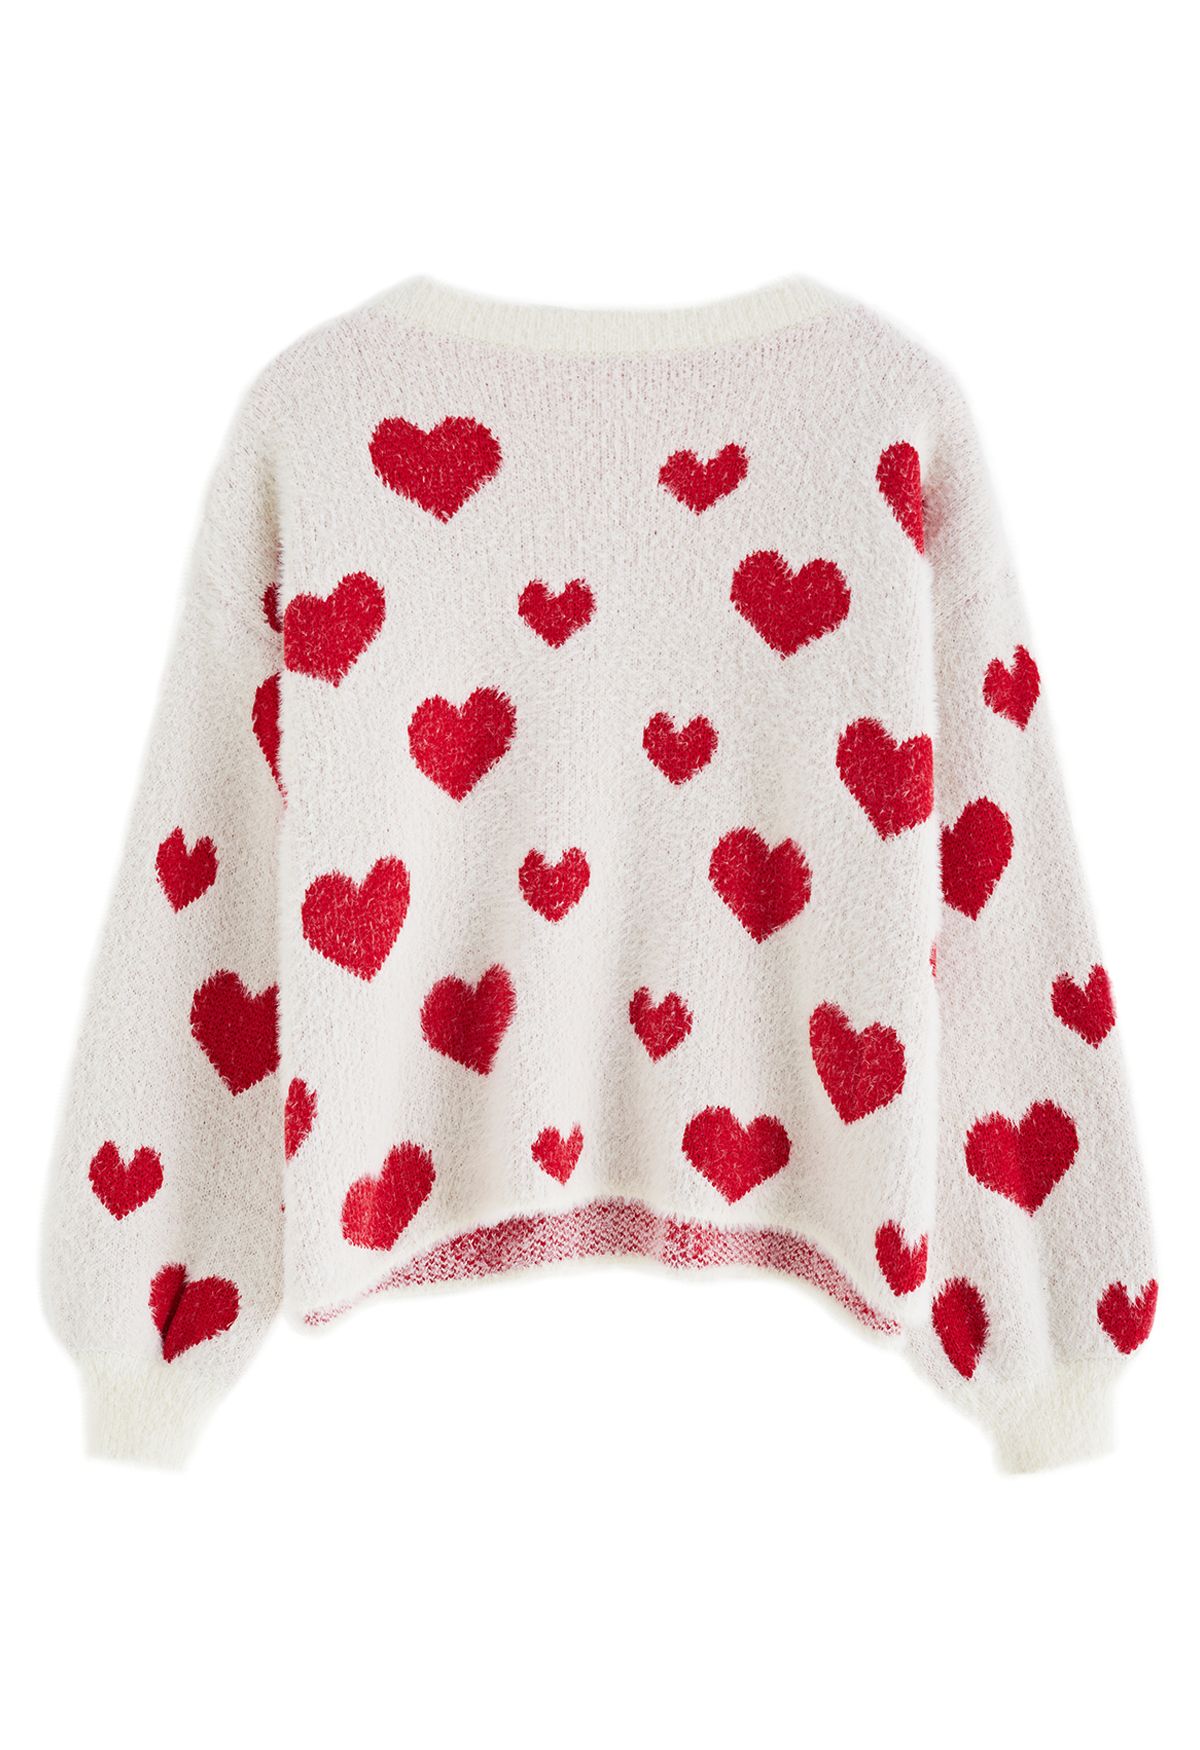 Fuzzy Contrast Heart Knit Sweater in Ivory